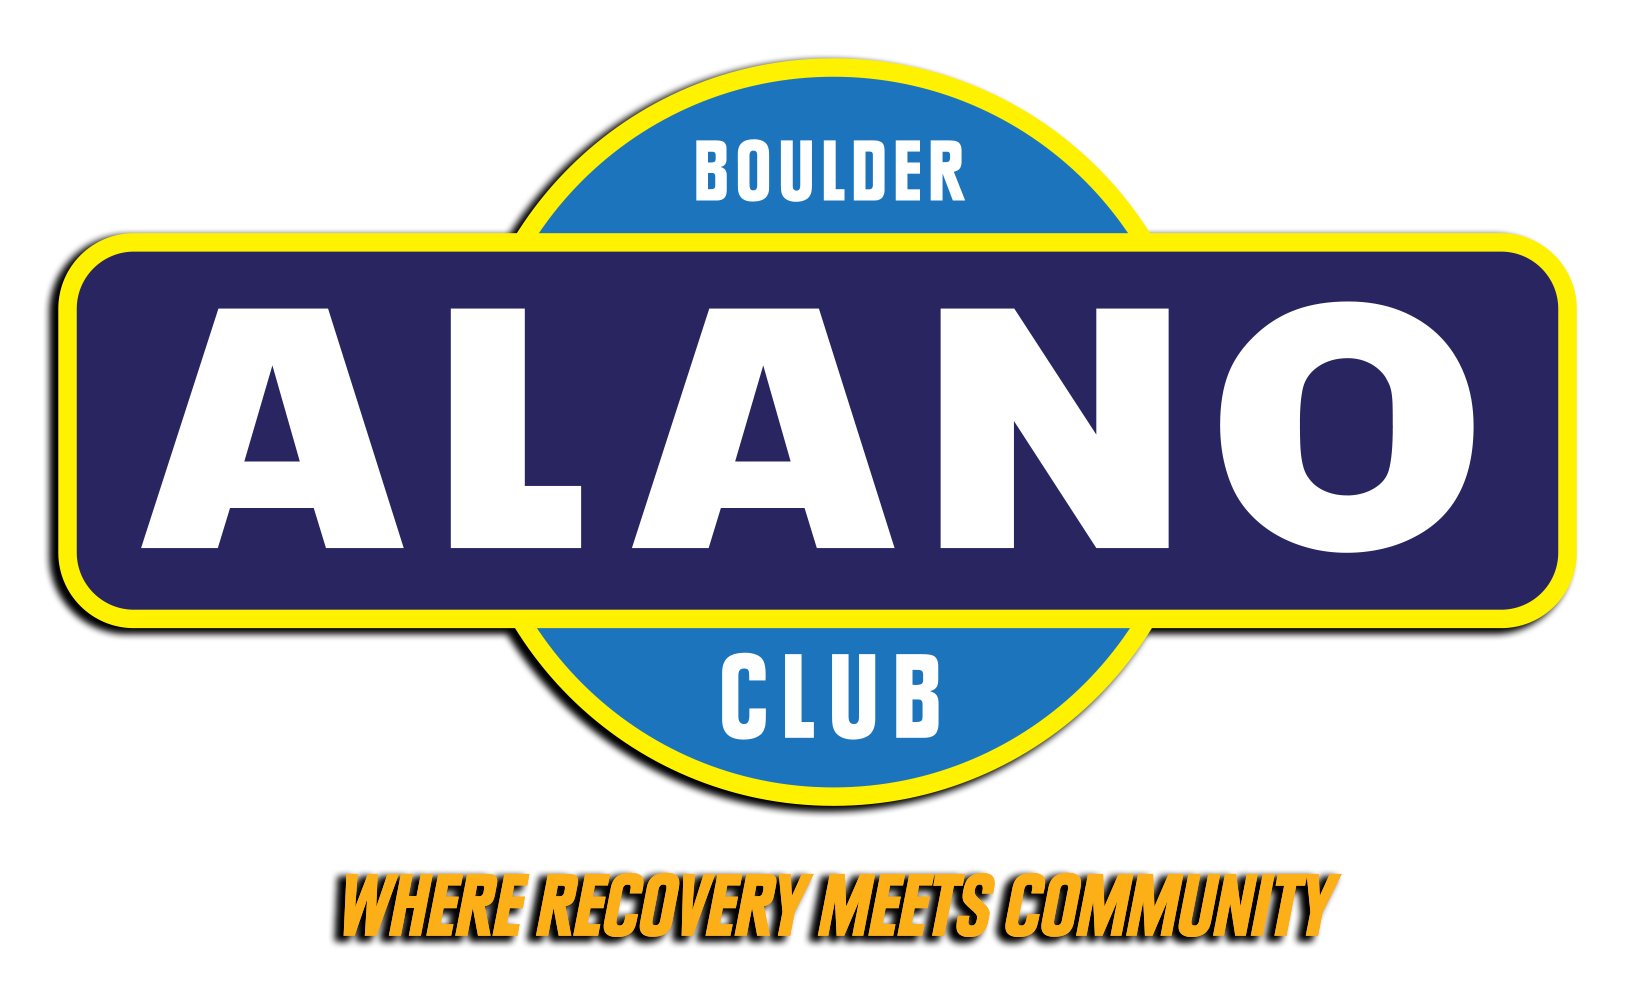 Boulder Alano Club